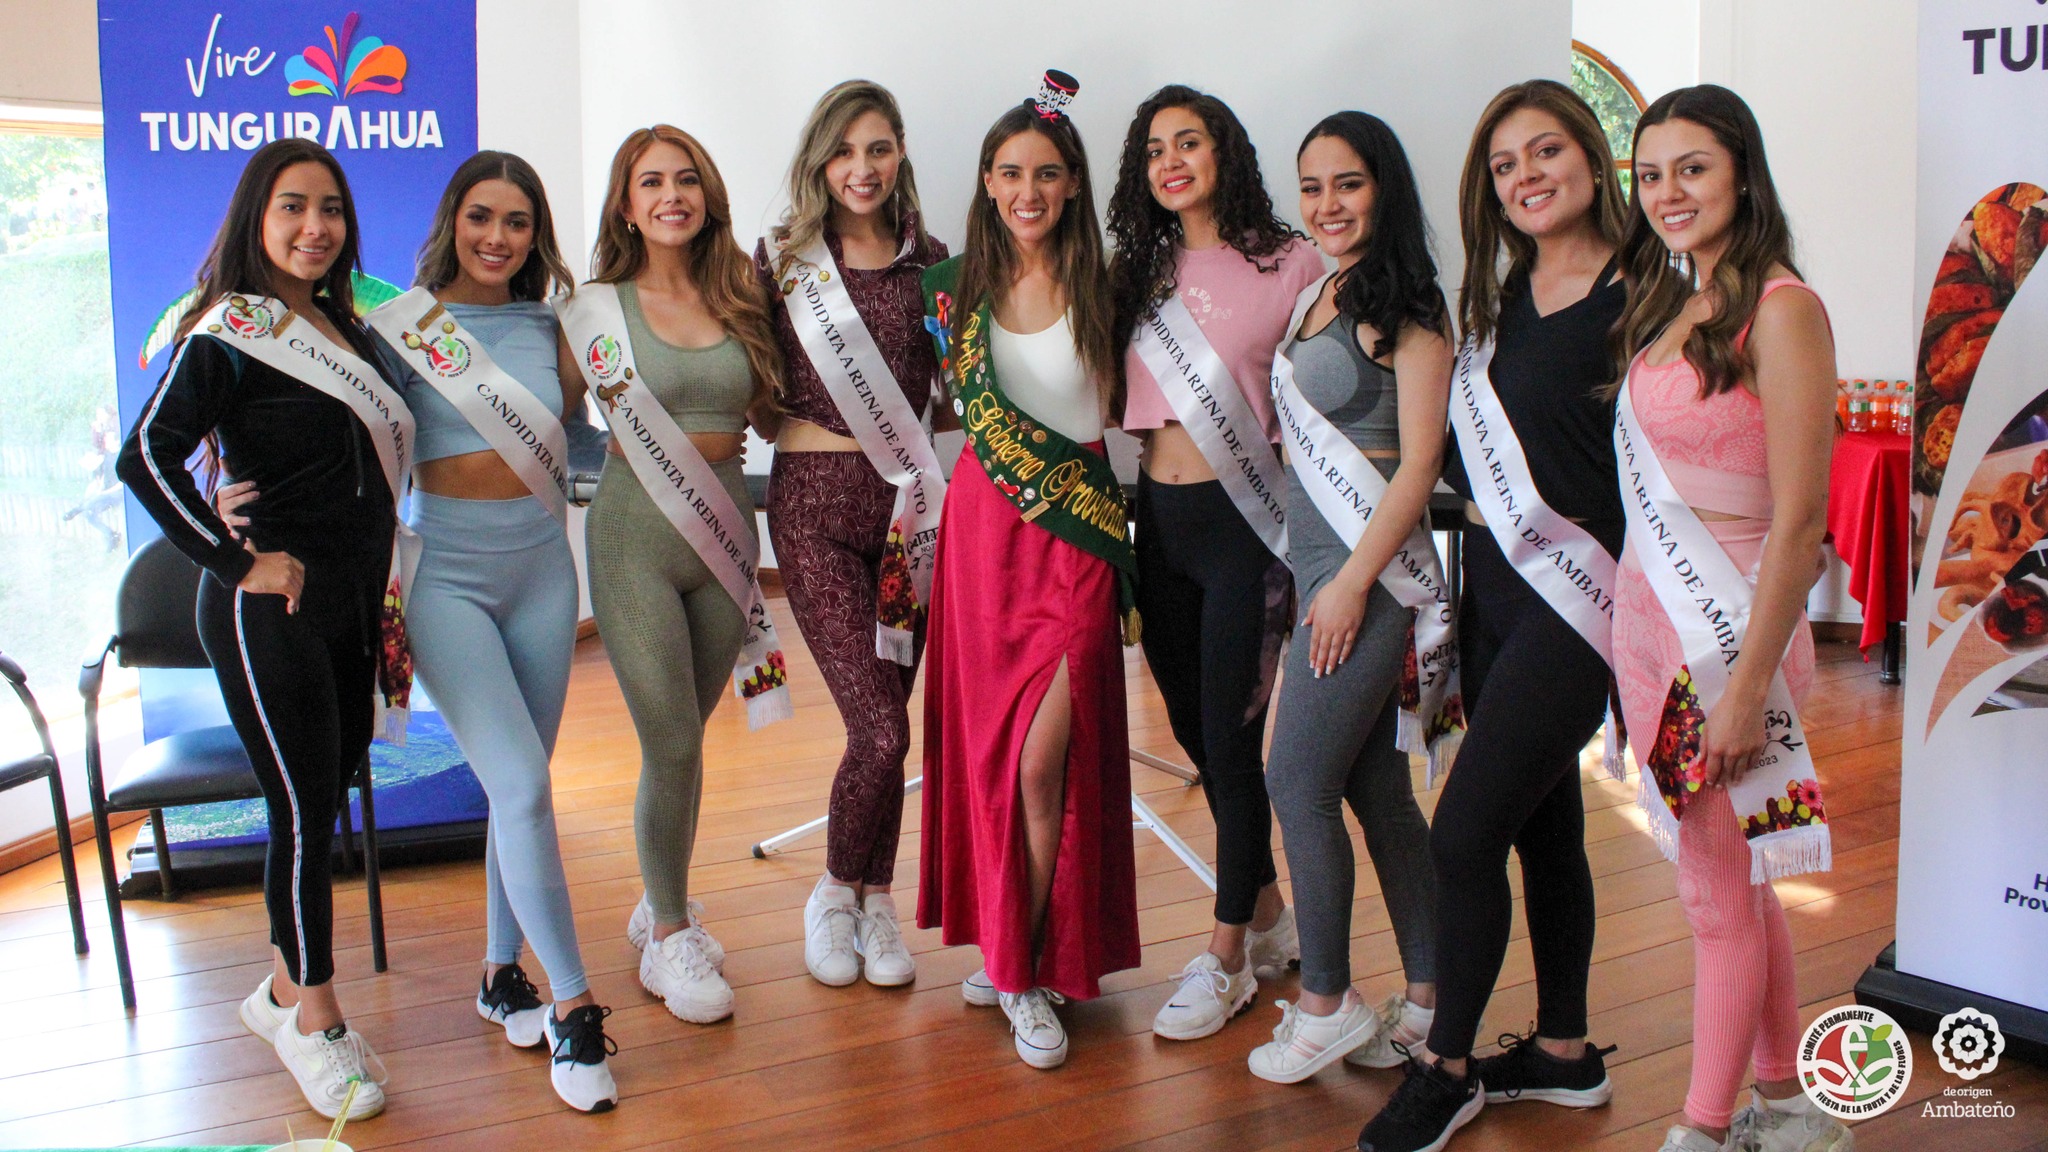 Elección de Miss Fotogenia de la edición 72 de las fiestas de Ambato